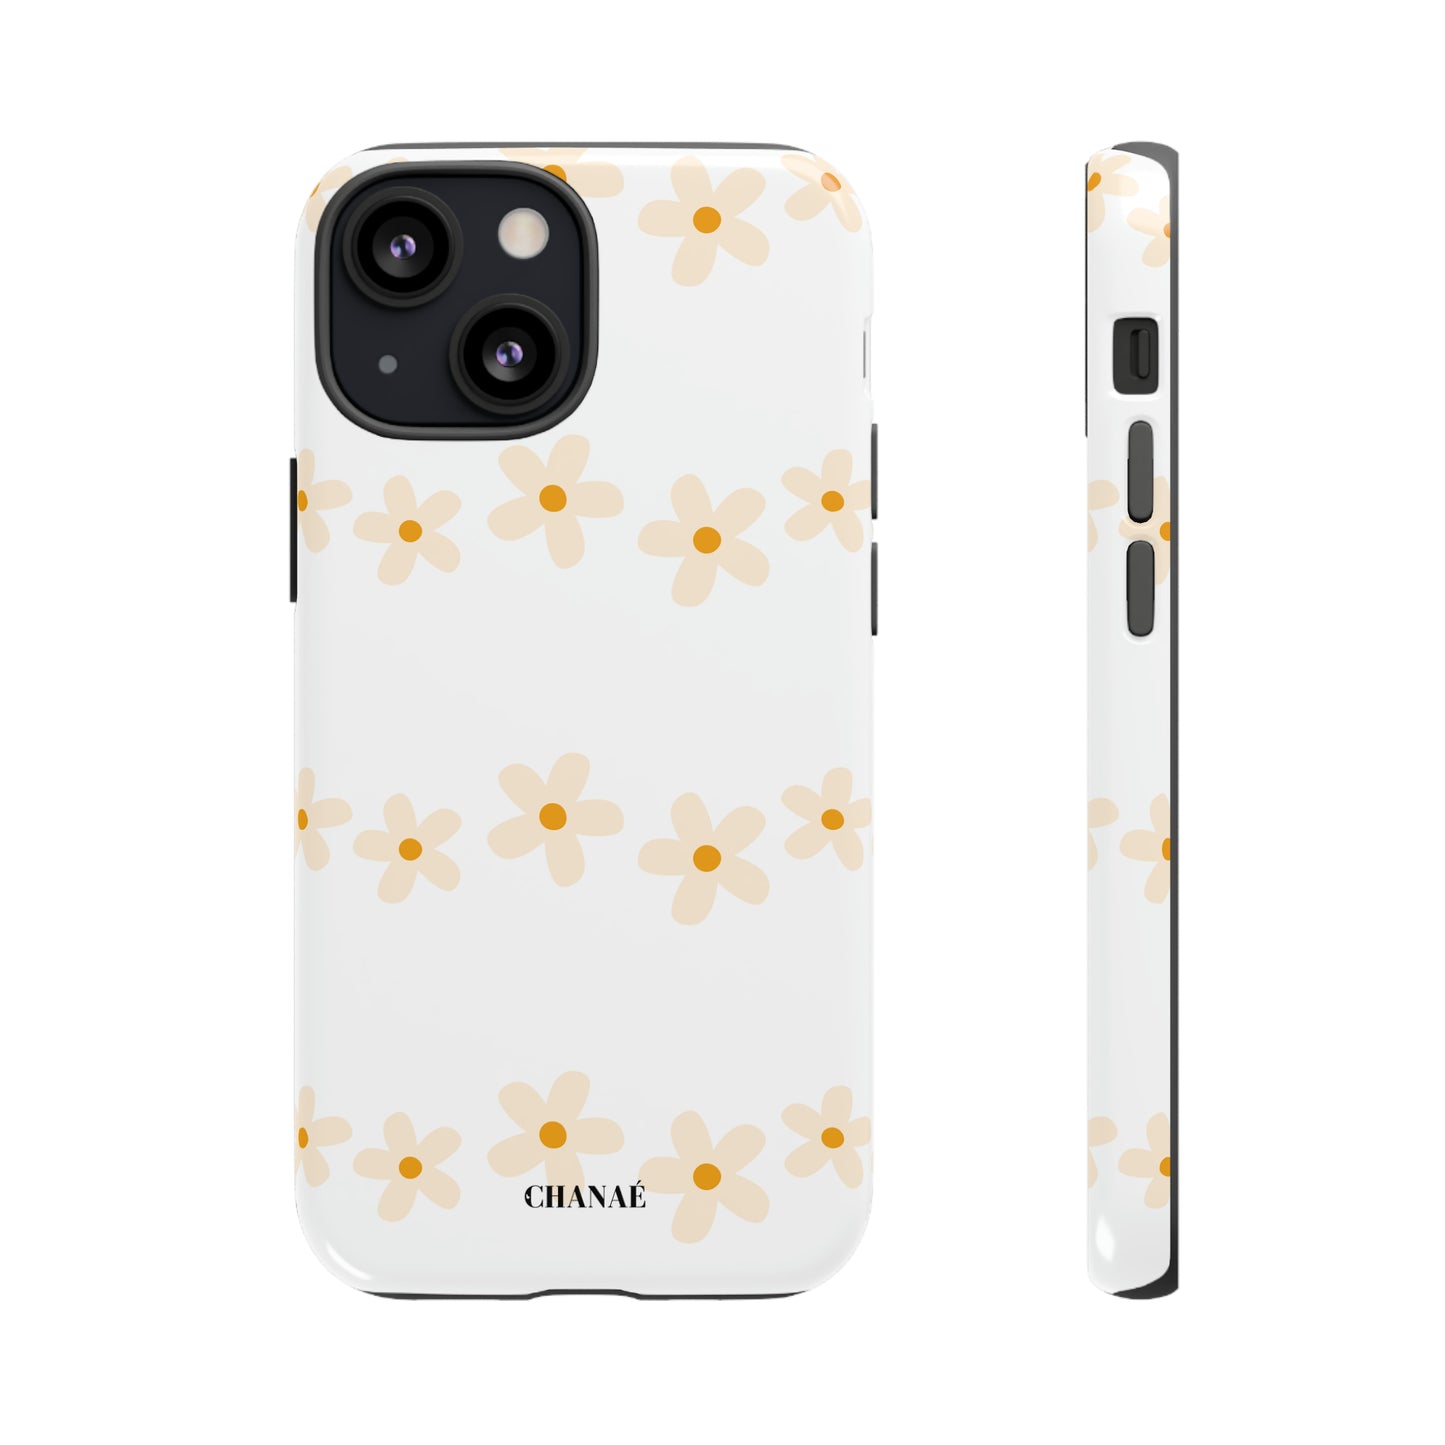 Les Fleurs iPhone "Tough" Case (White)